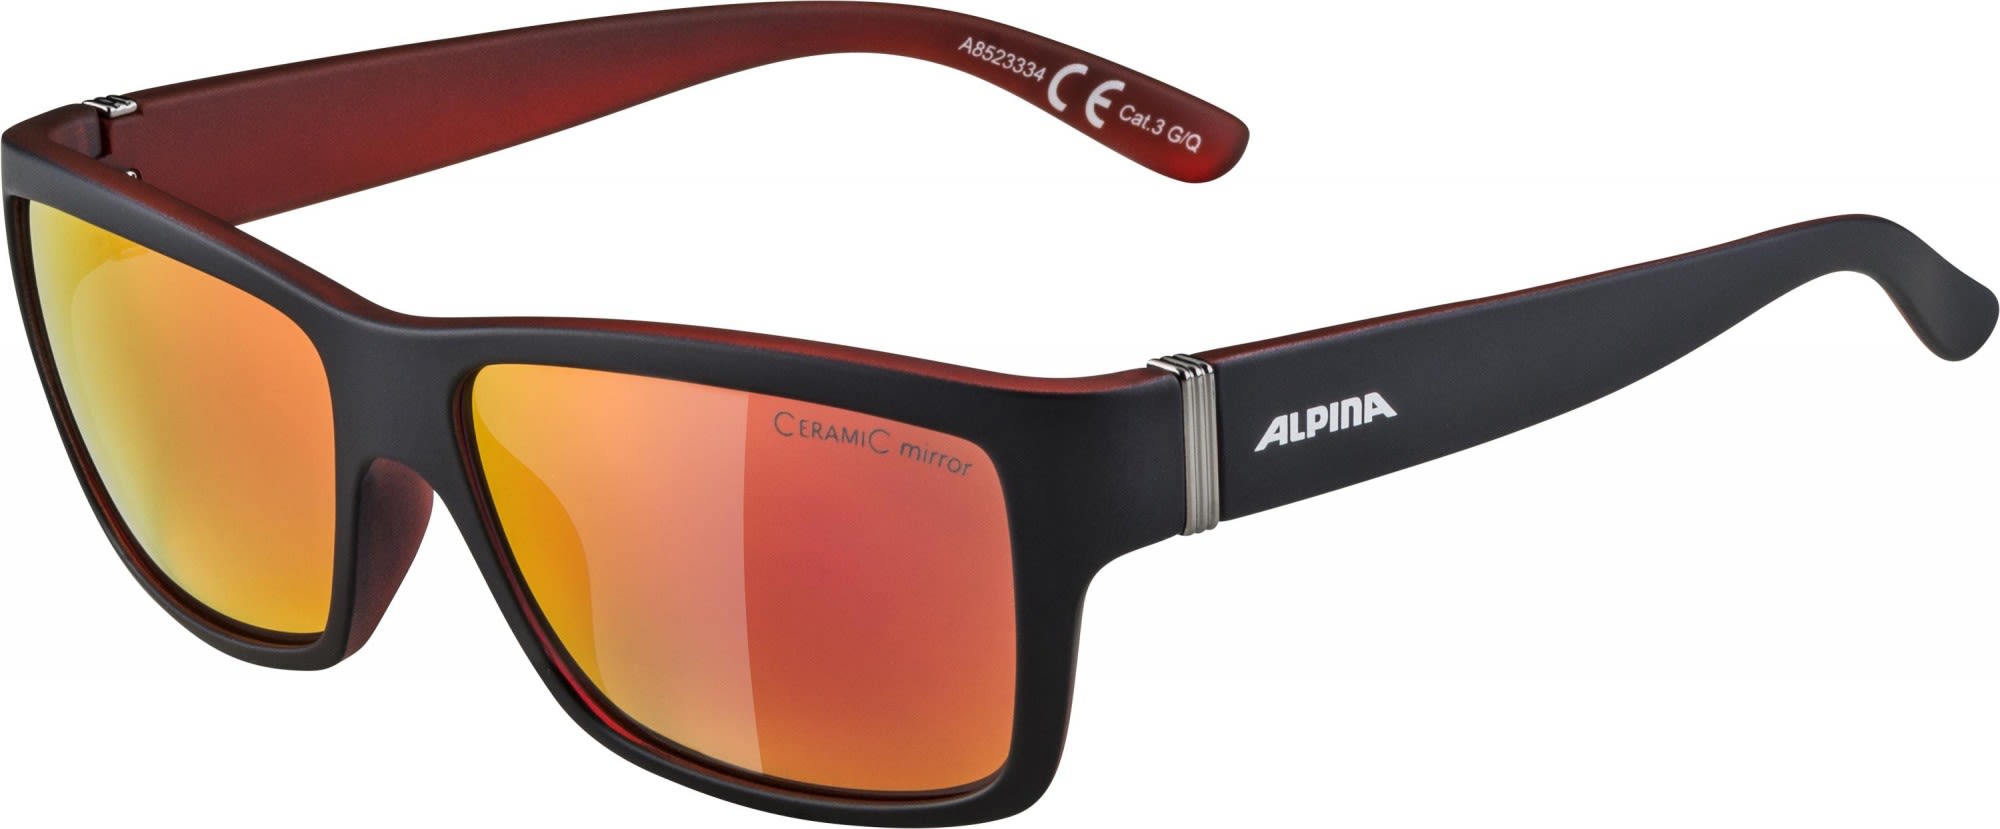 Alpina Sportliche Lifestyle Sonnenbrille Cool Grey Matt - Red Mirror